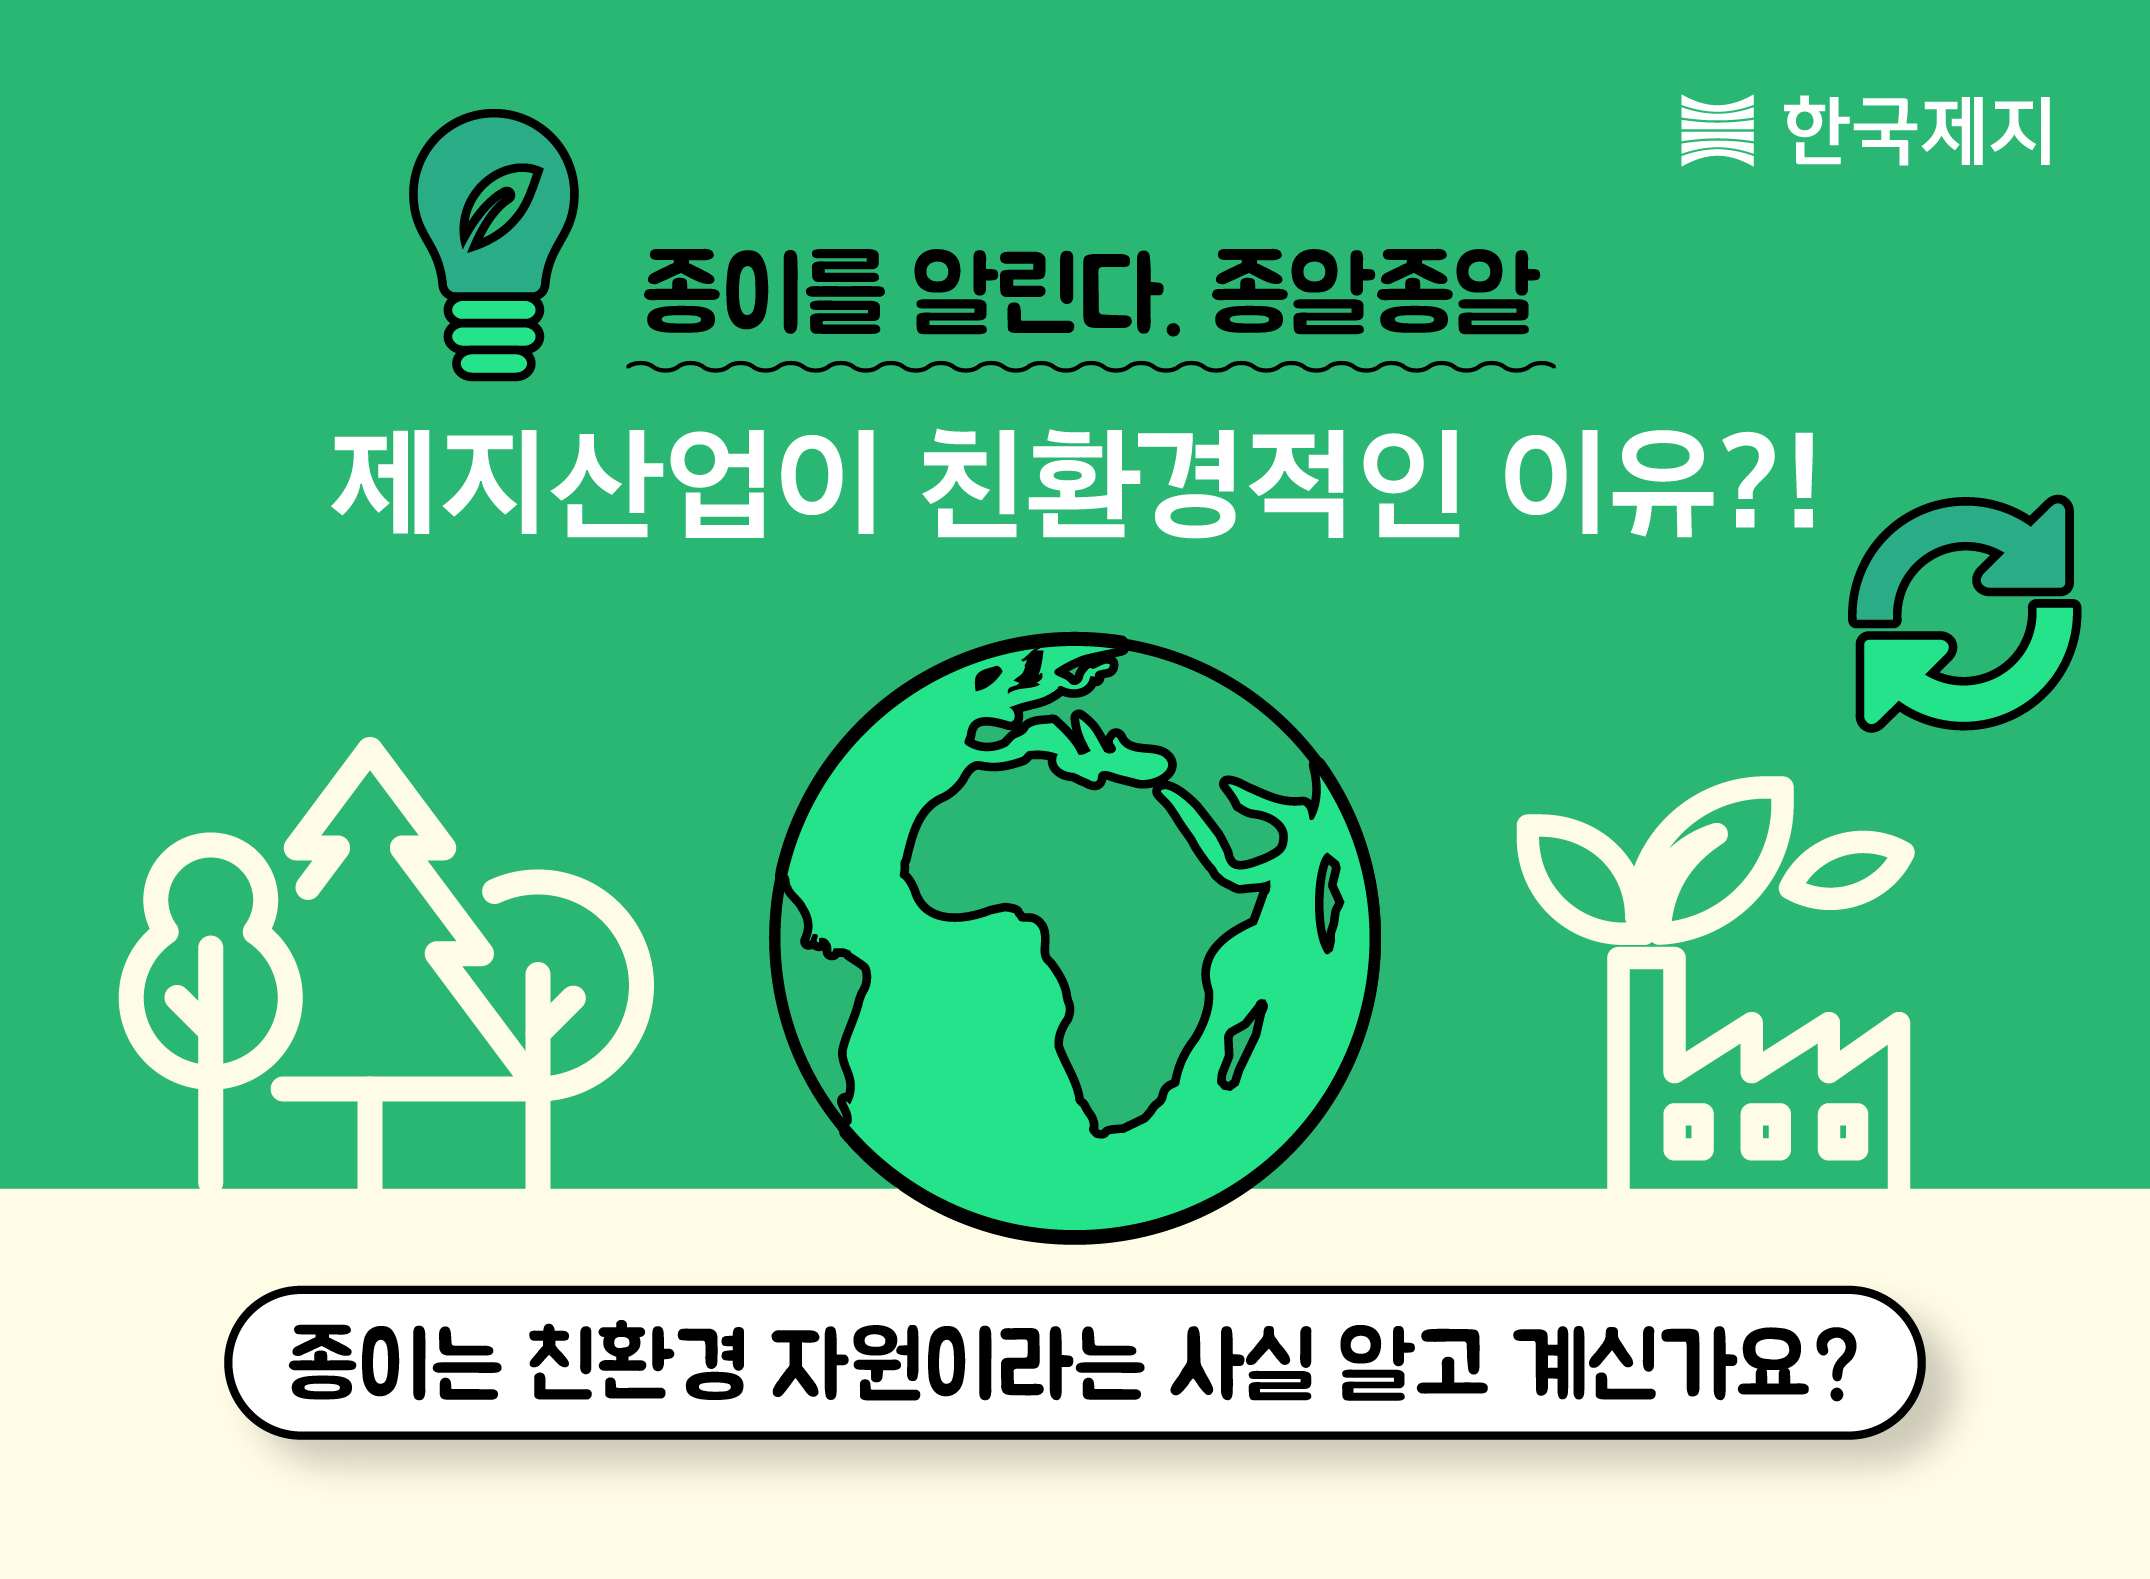 한국제지, 제지연합회와 함께 친환경 인식제고 캠페인 진행